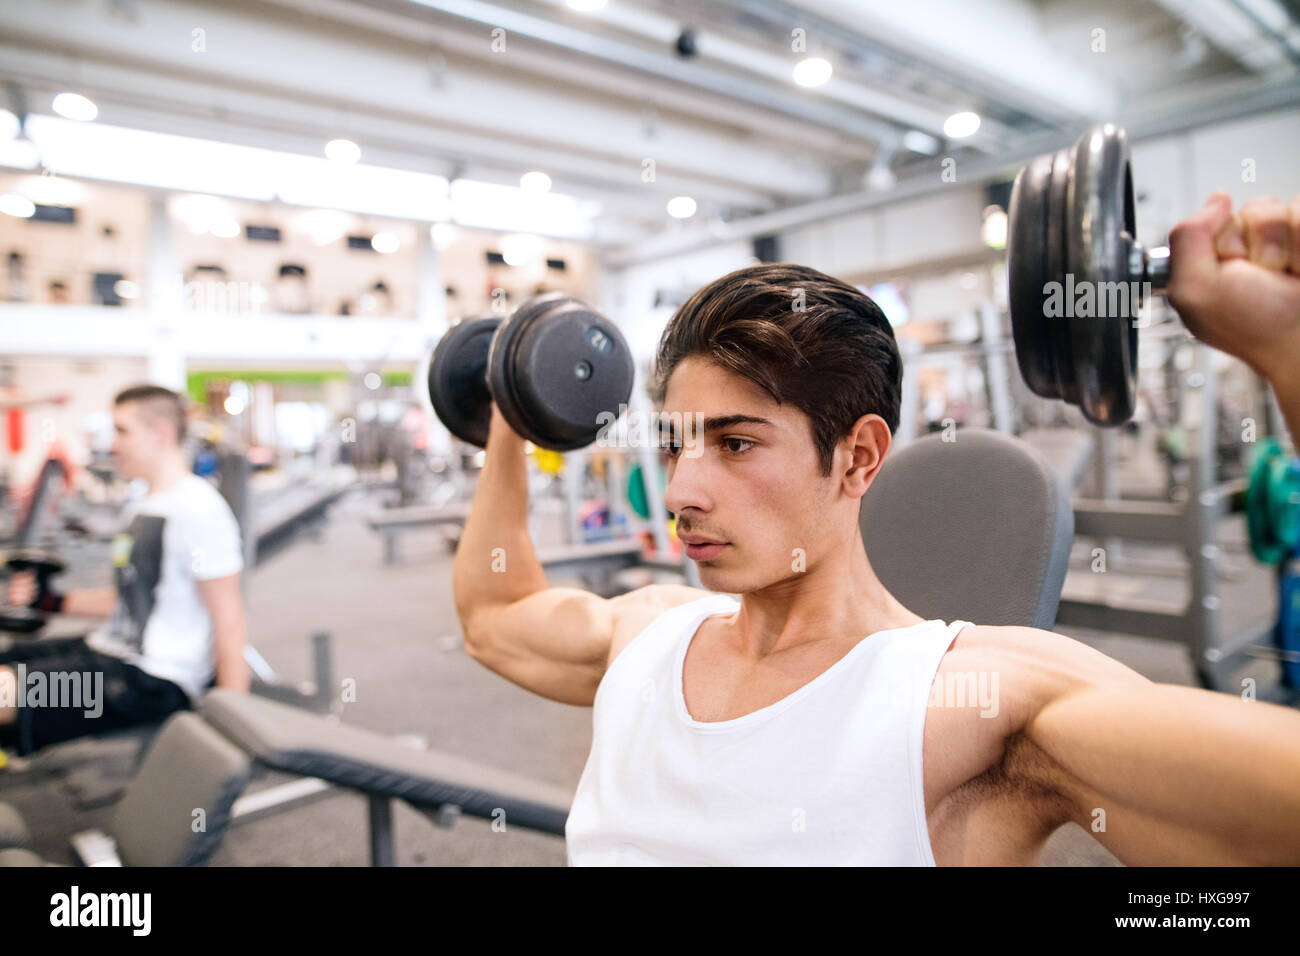 Junge spanische Fitness Mann im Fitnessstudio auf Bank, trainieren mit Gewichten Stockfoto